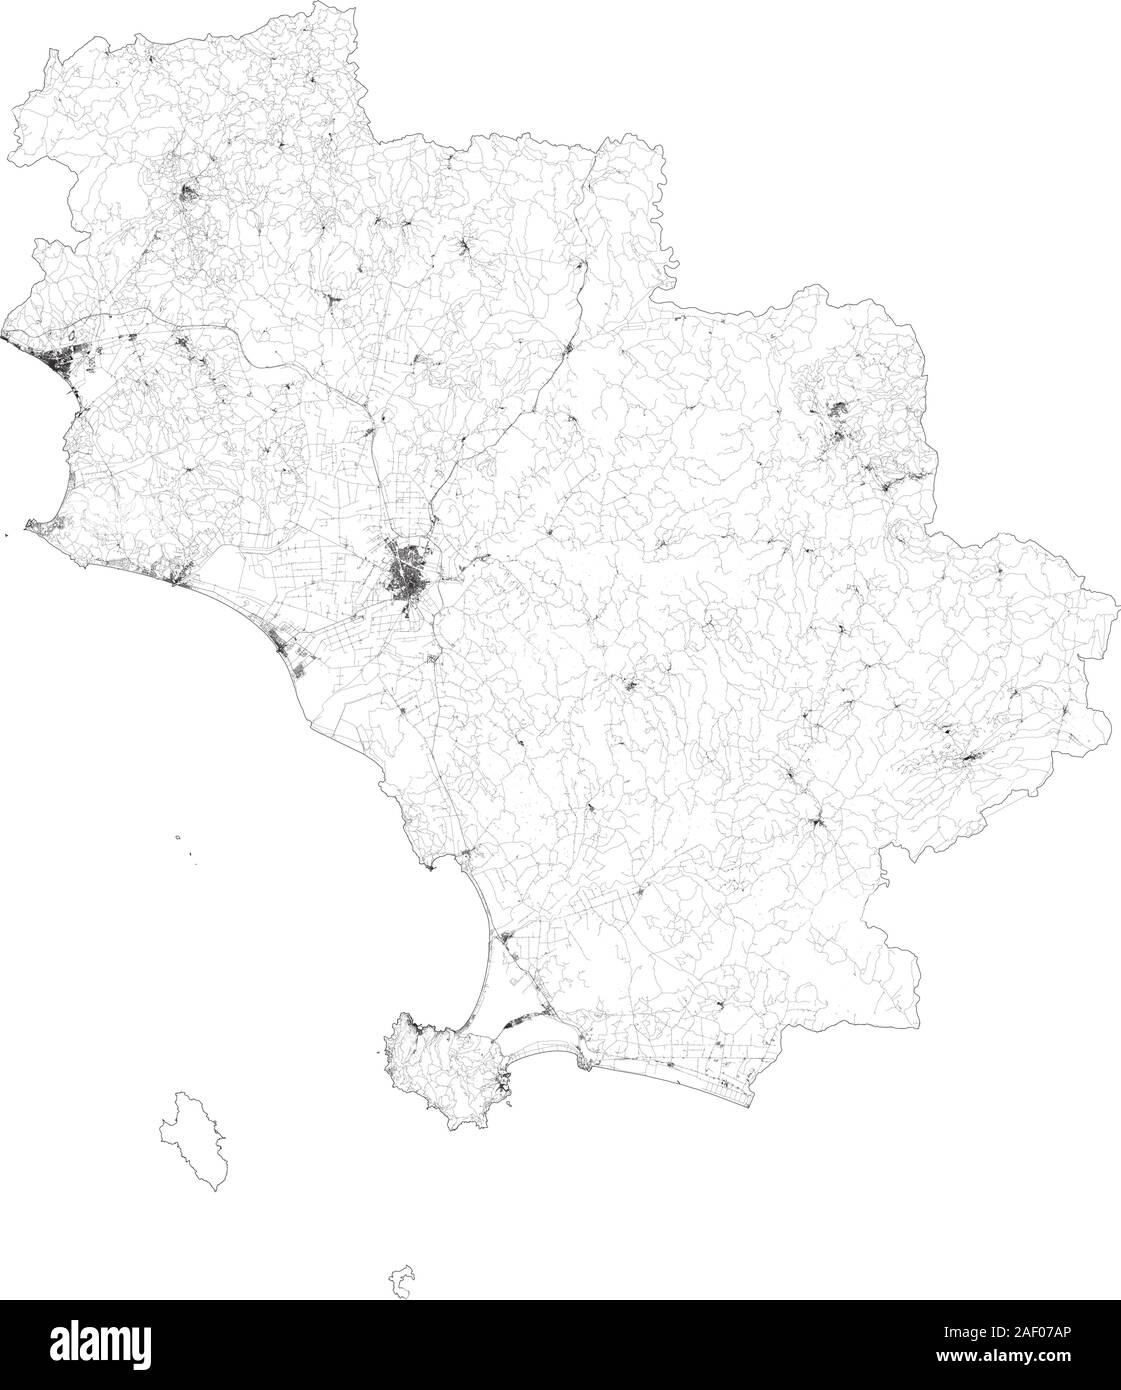 Sat-Karte der Provinz von Grosseto, Städte und Straßen, Gebäude und Straßen der Umgebung. Toskana, Italien. Karte Straßen, Ringstraßen Stock Vektor